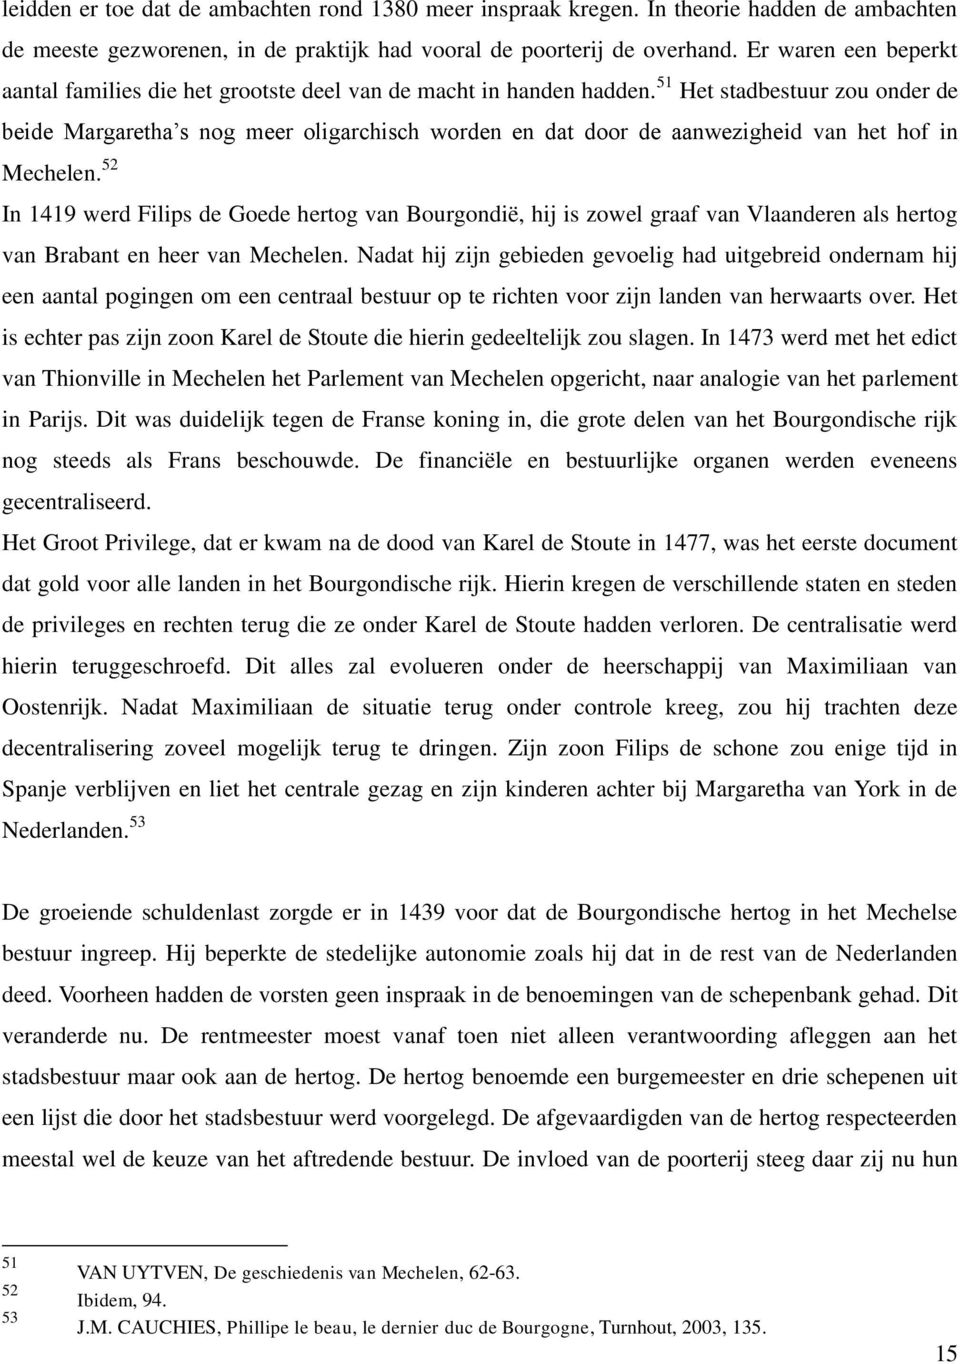 51 Het stadbestuur zou onder de beide Margaretha s nog meer oligarchisch worden en dat door de aanwezigheid van het hof in Mechelen.